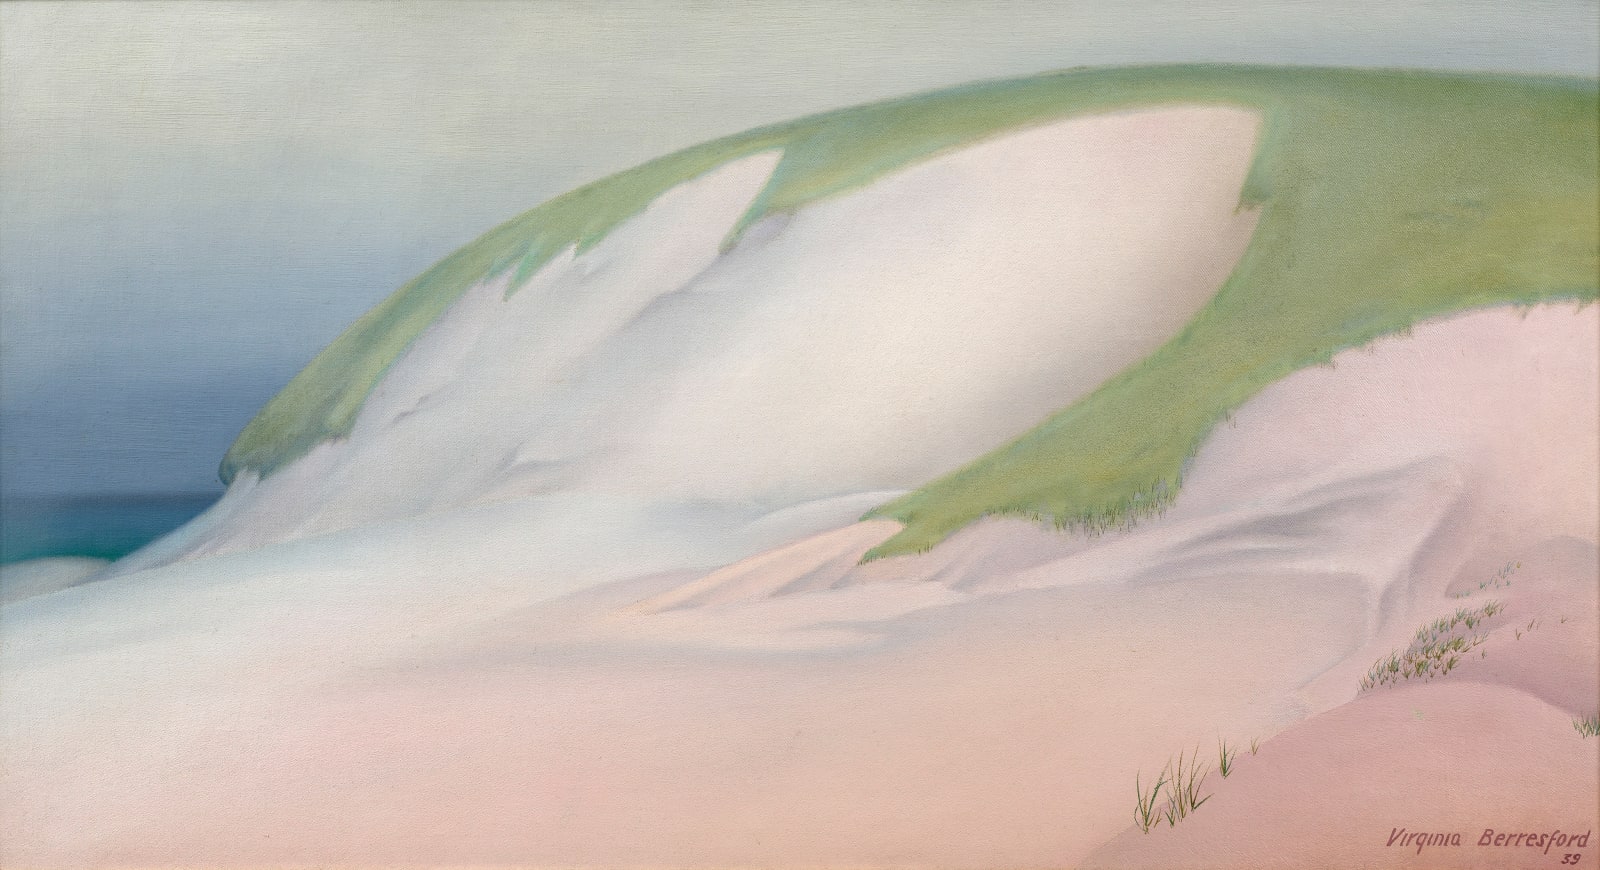 Virginia Berresford, Dunes II, 1939